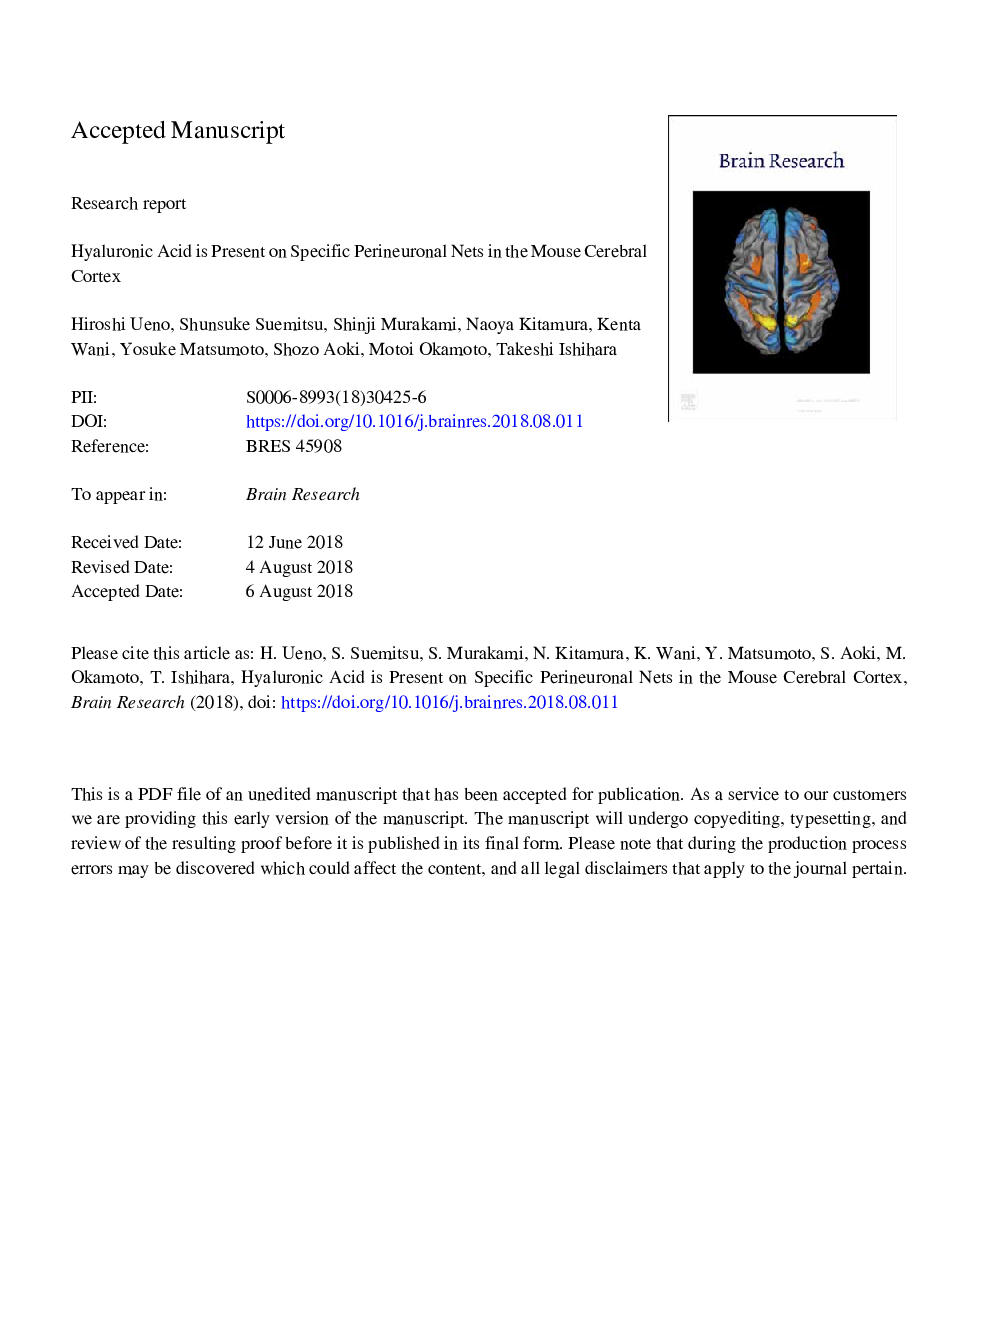 اسید هیالورونیک در شبکه های خاص پریینورونال در قشر مغز ماوس وجود دارد 